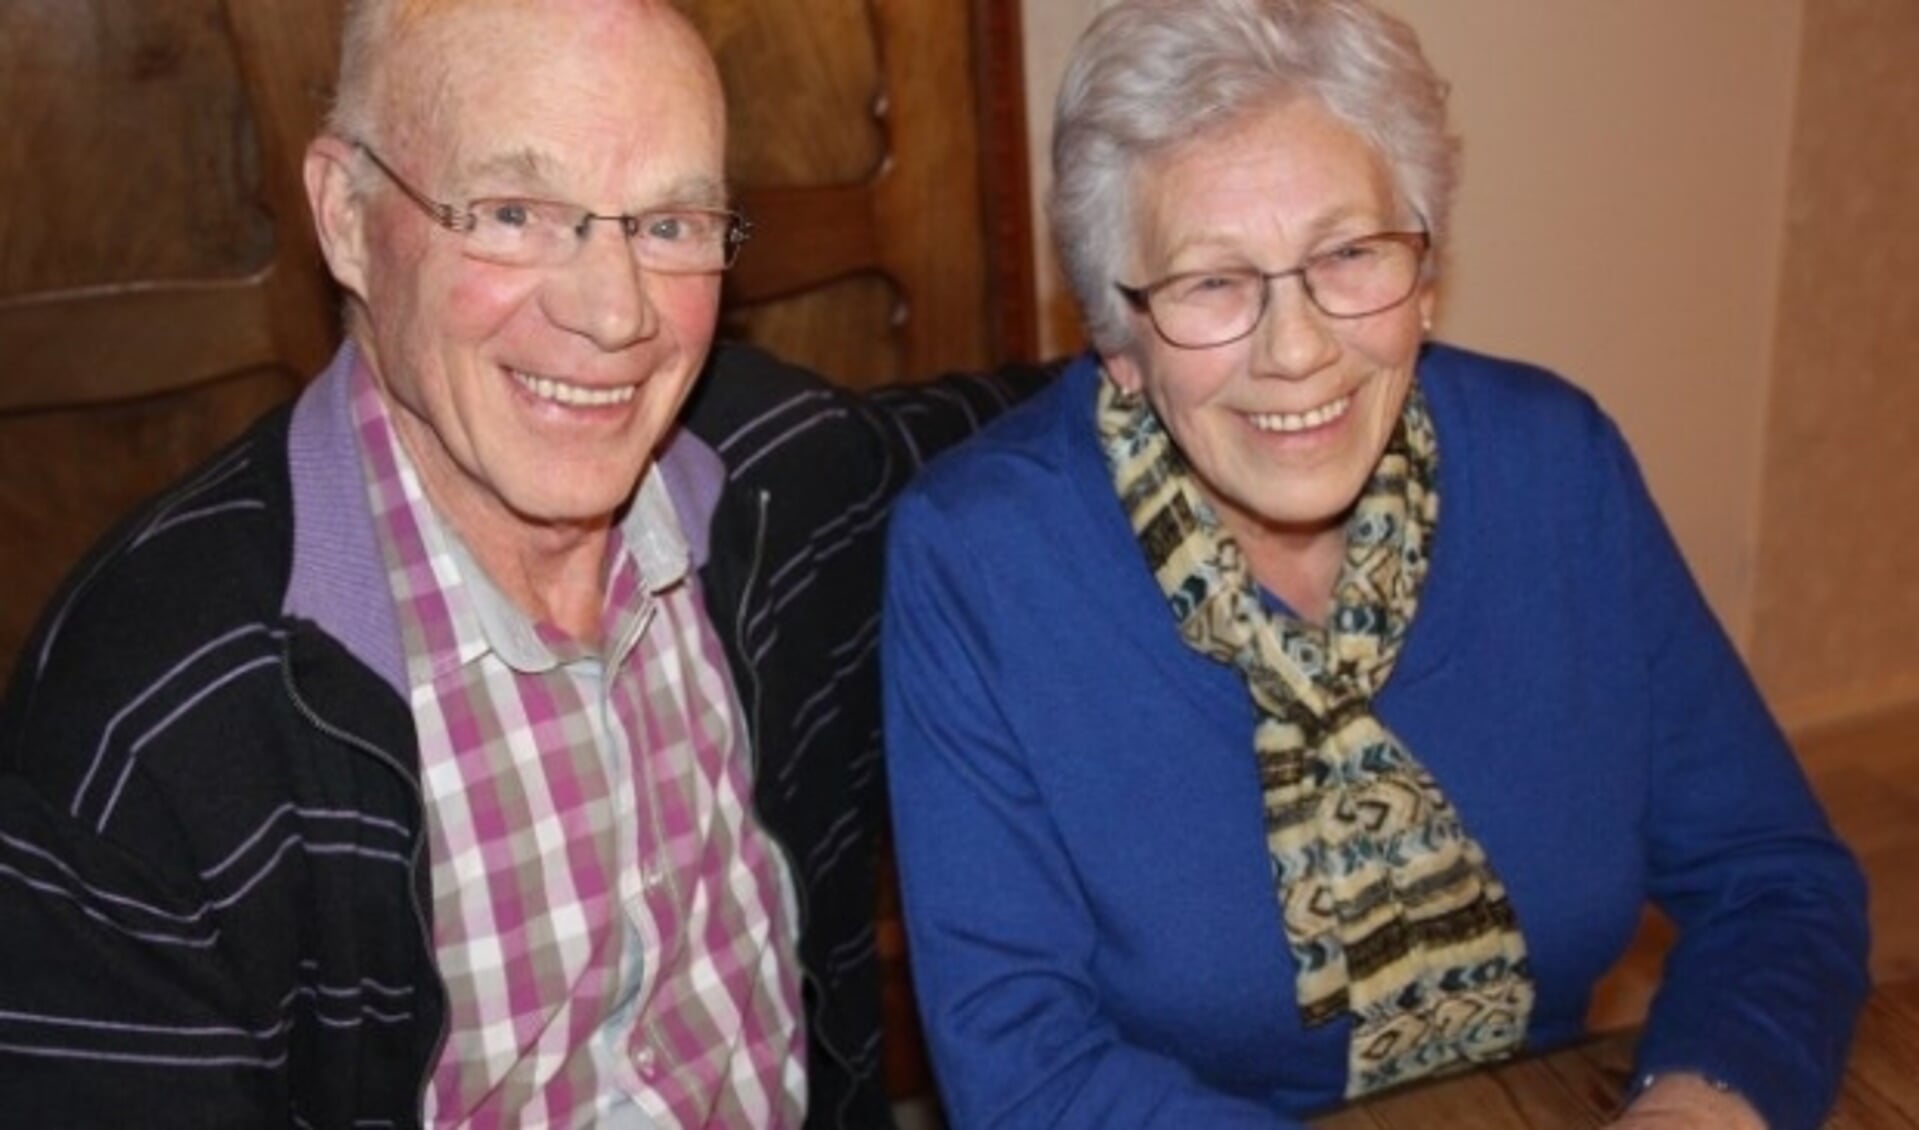 Corrie en Jan kennen elkaar al 56 jaar en vormen nog steeds een gelukkig paar.